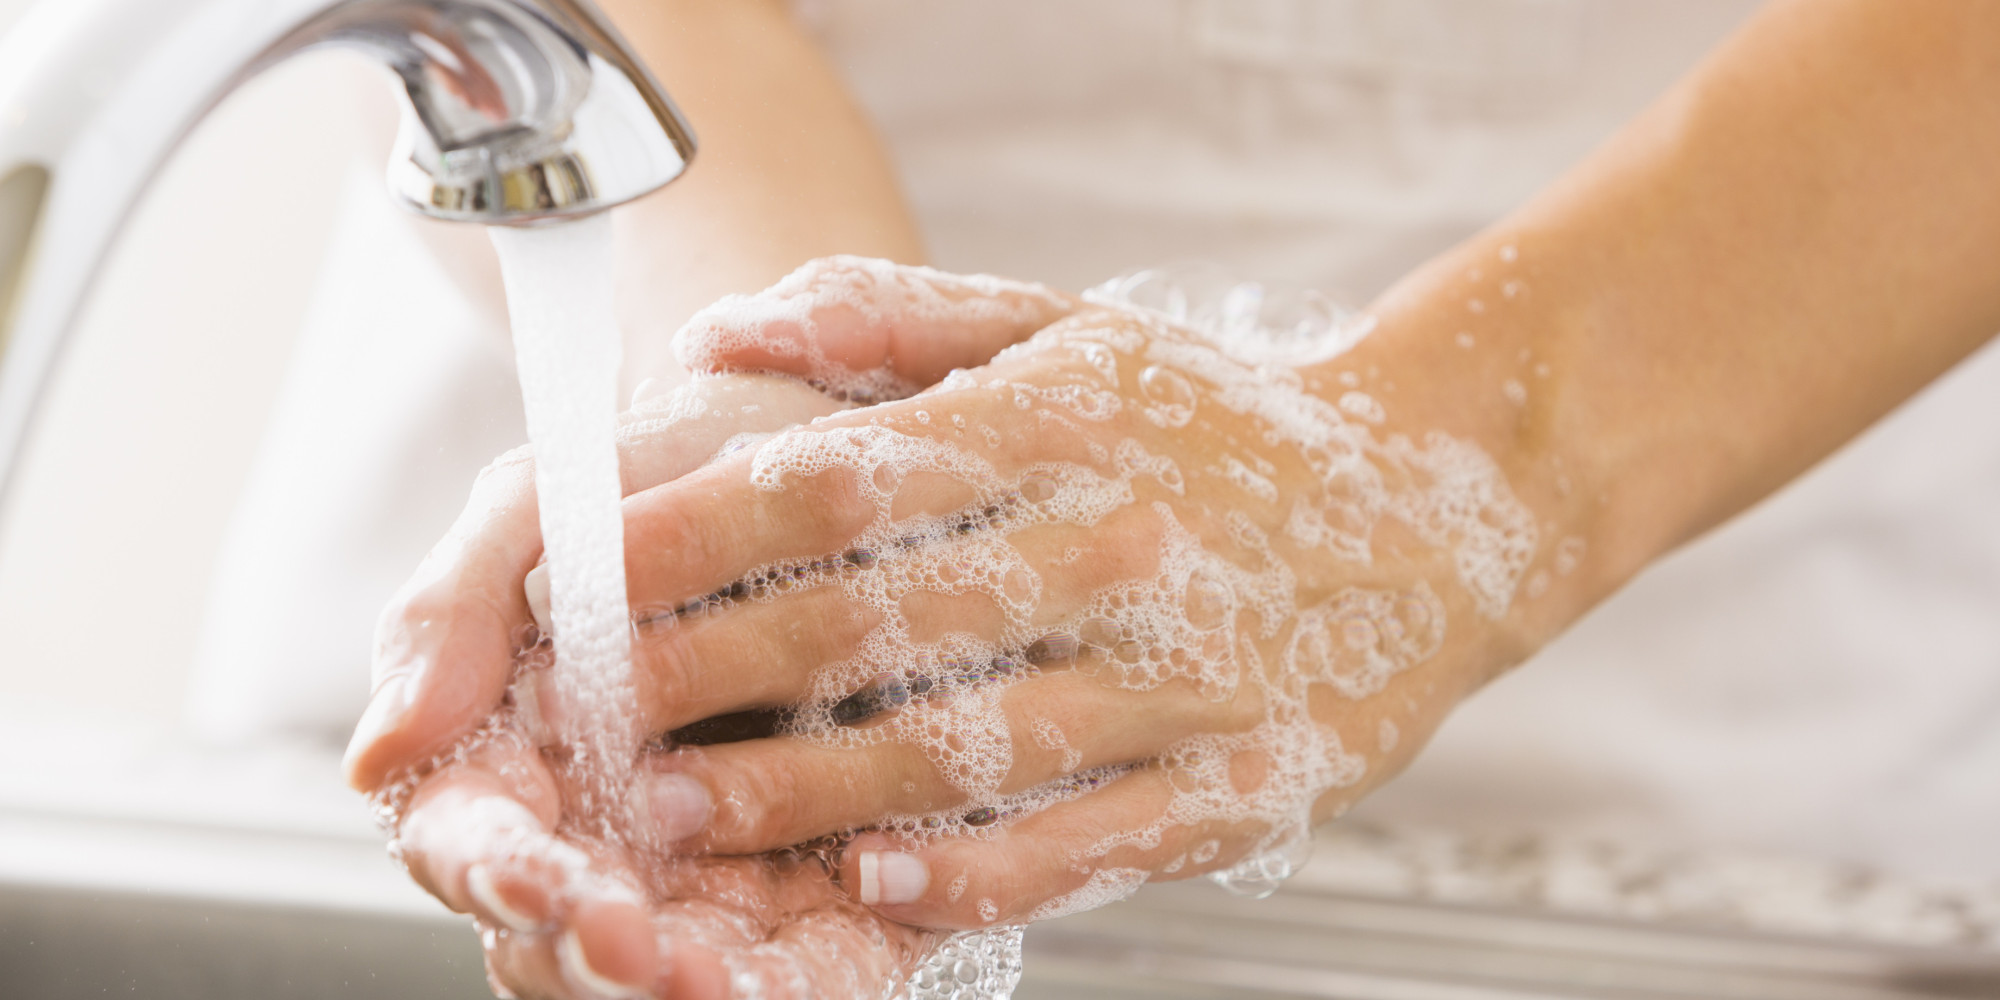 Caucasian woman washing her hands